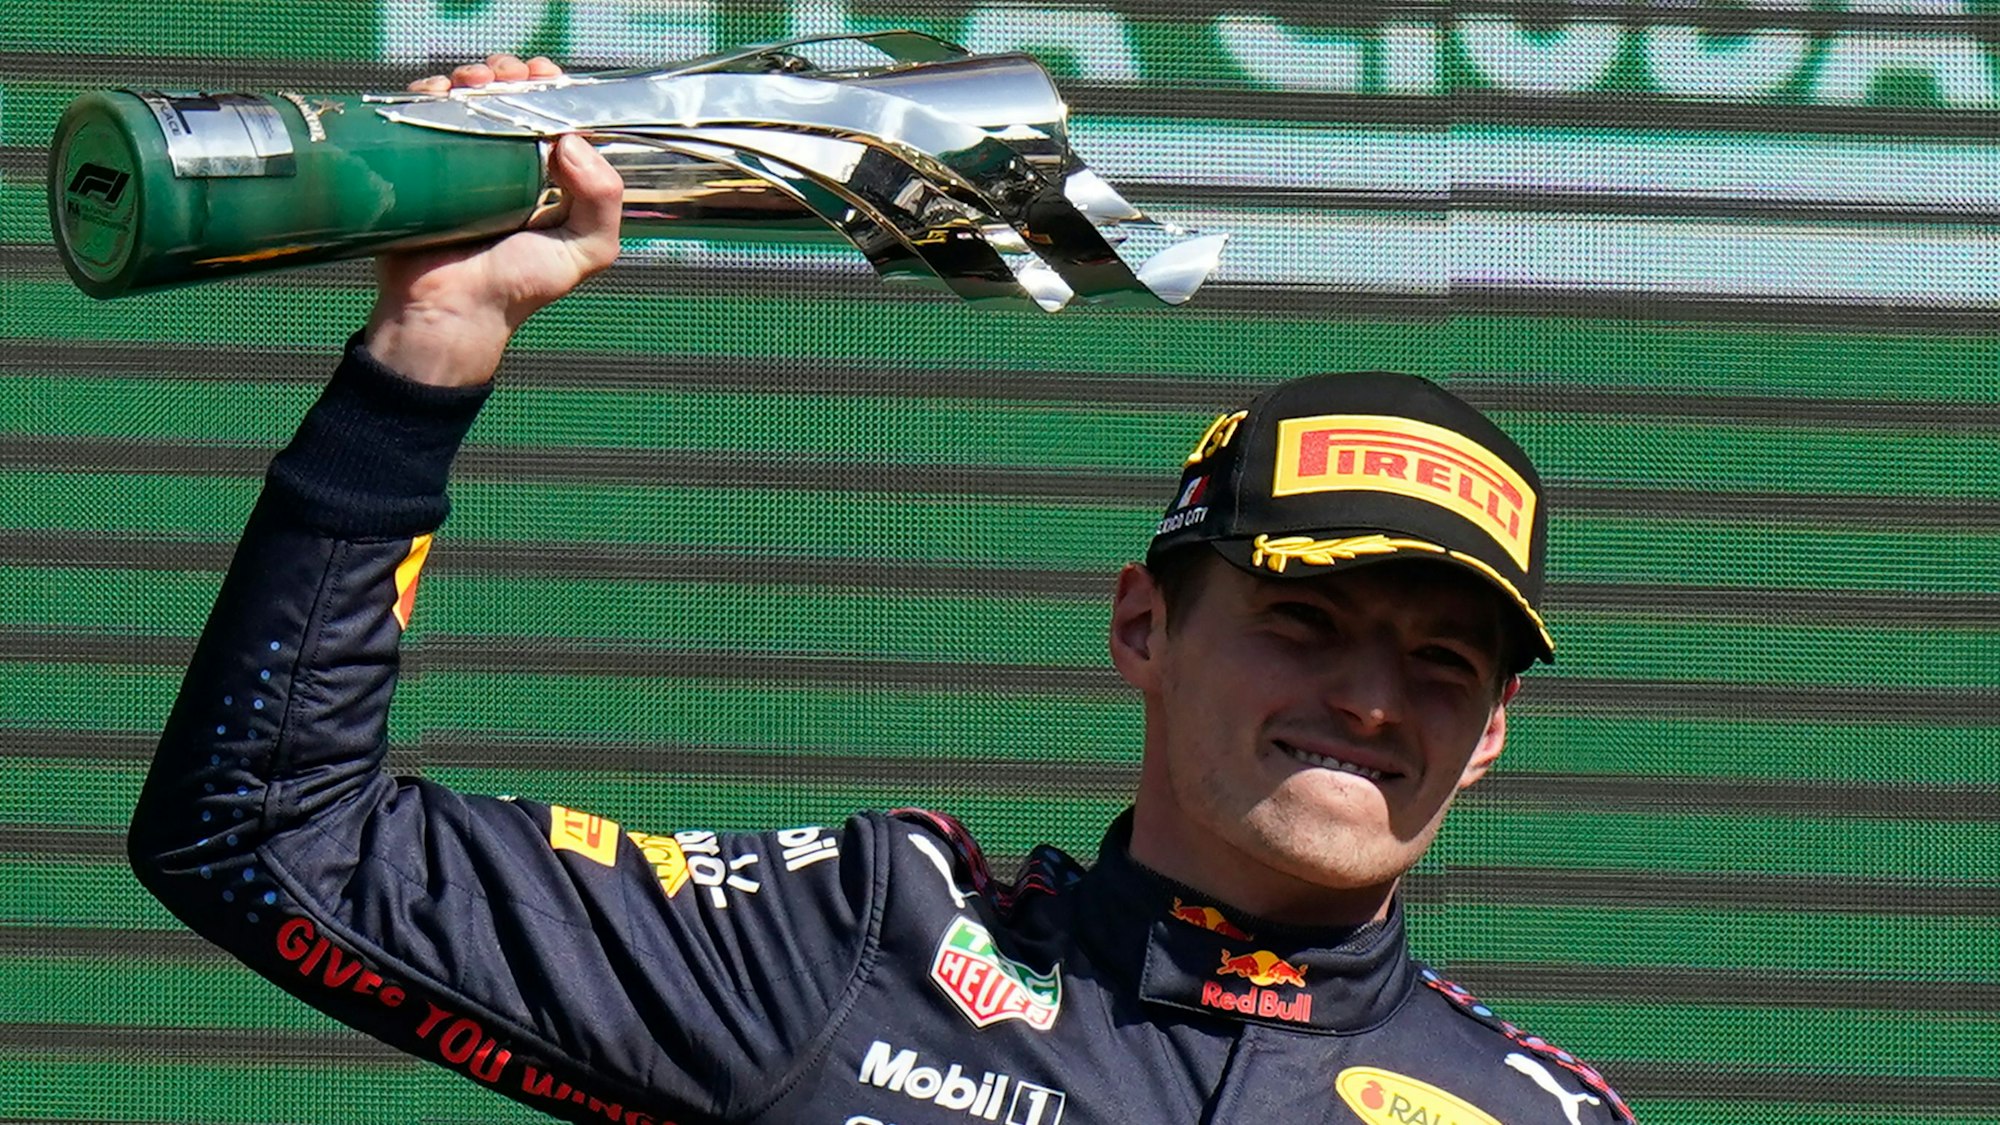 Motorsport: Formel-1-Weltmeisterschaft, Grand Prix von Mexiko, Rennen: Max Verstappen aus den Niederlanden vom Team Red Bull jubelt auf dem Podium über seinen Sieg.